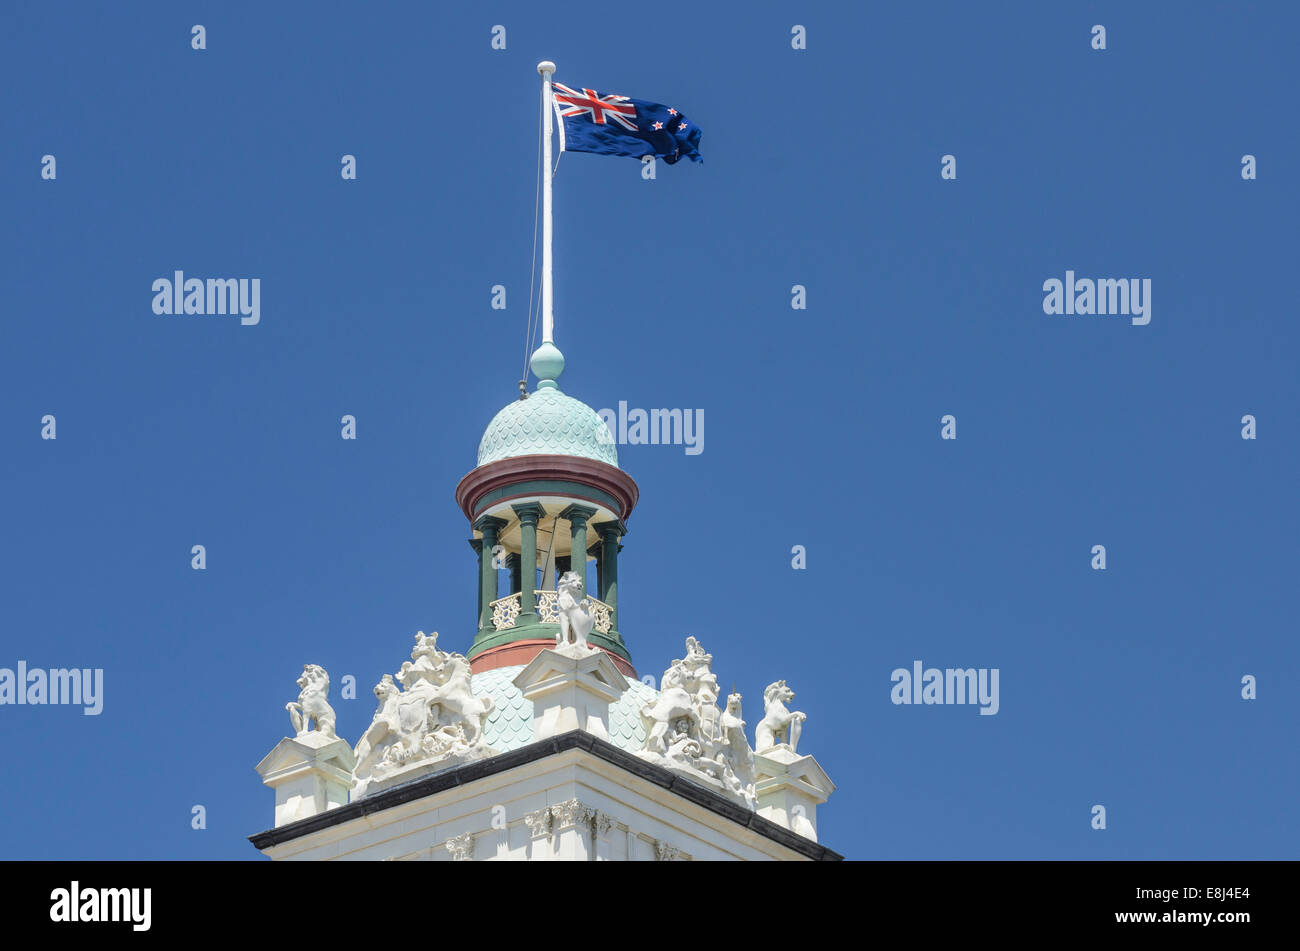 Tour de la station avec la Nouvelle-Zélande drapeau, Dunedin, île du Sud, Nouvelle-Zélande Banque D'Images